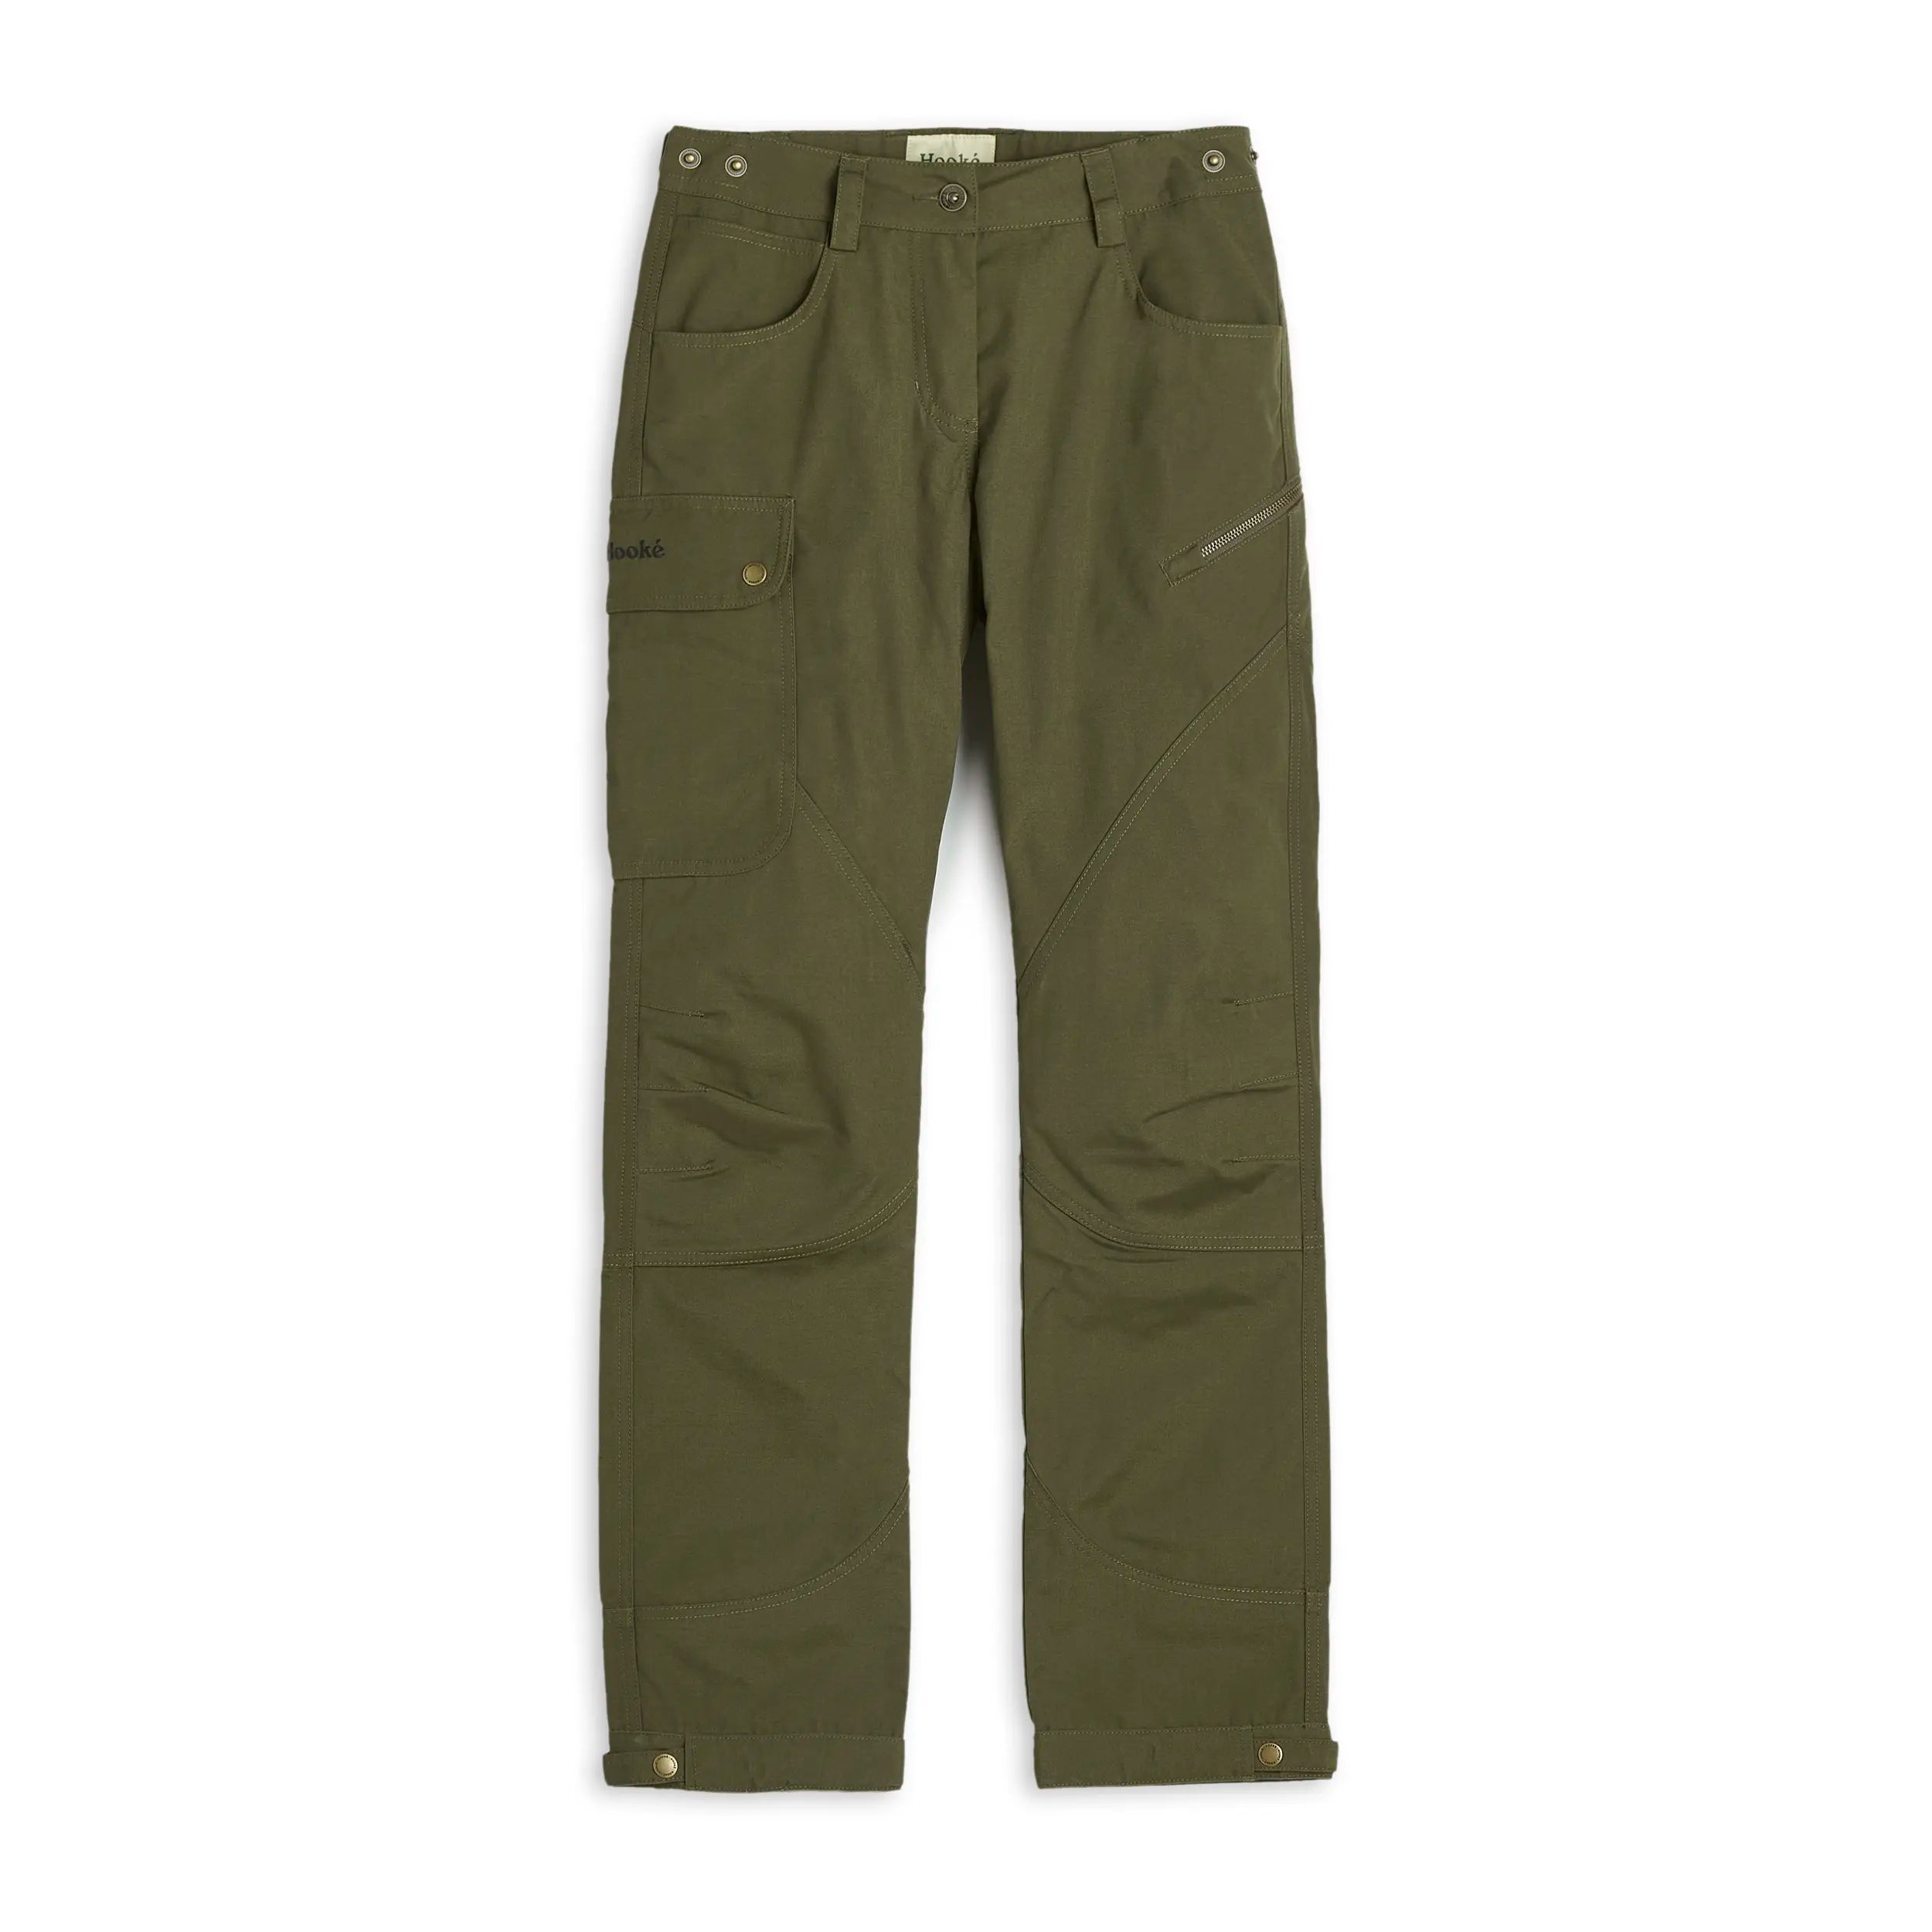 LA Gear Women's Cargo Pants - Olive Green - Size 10